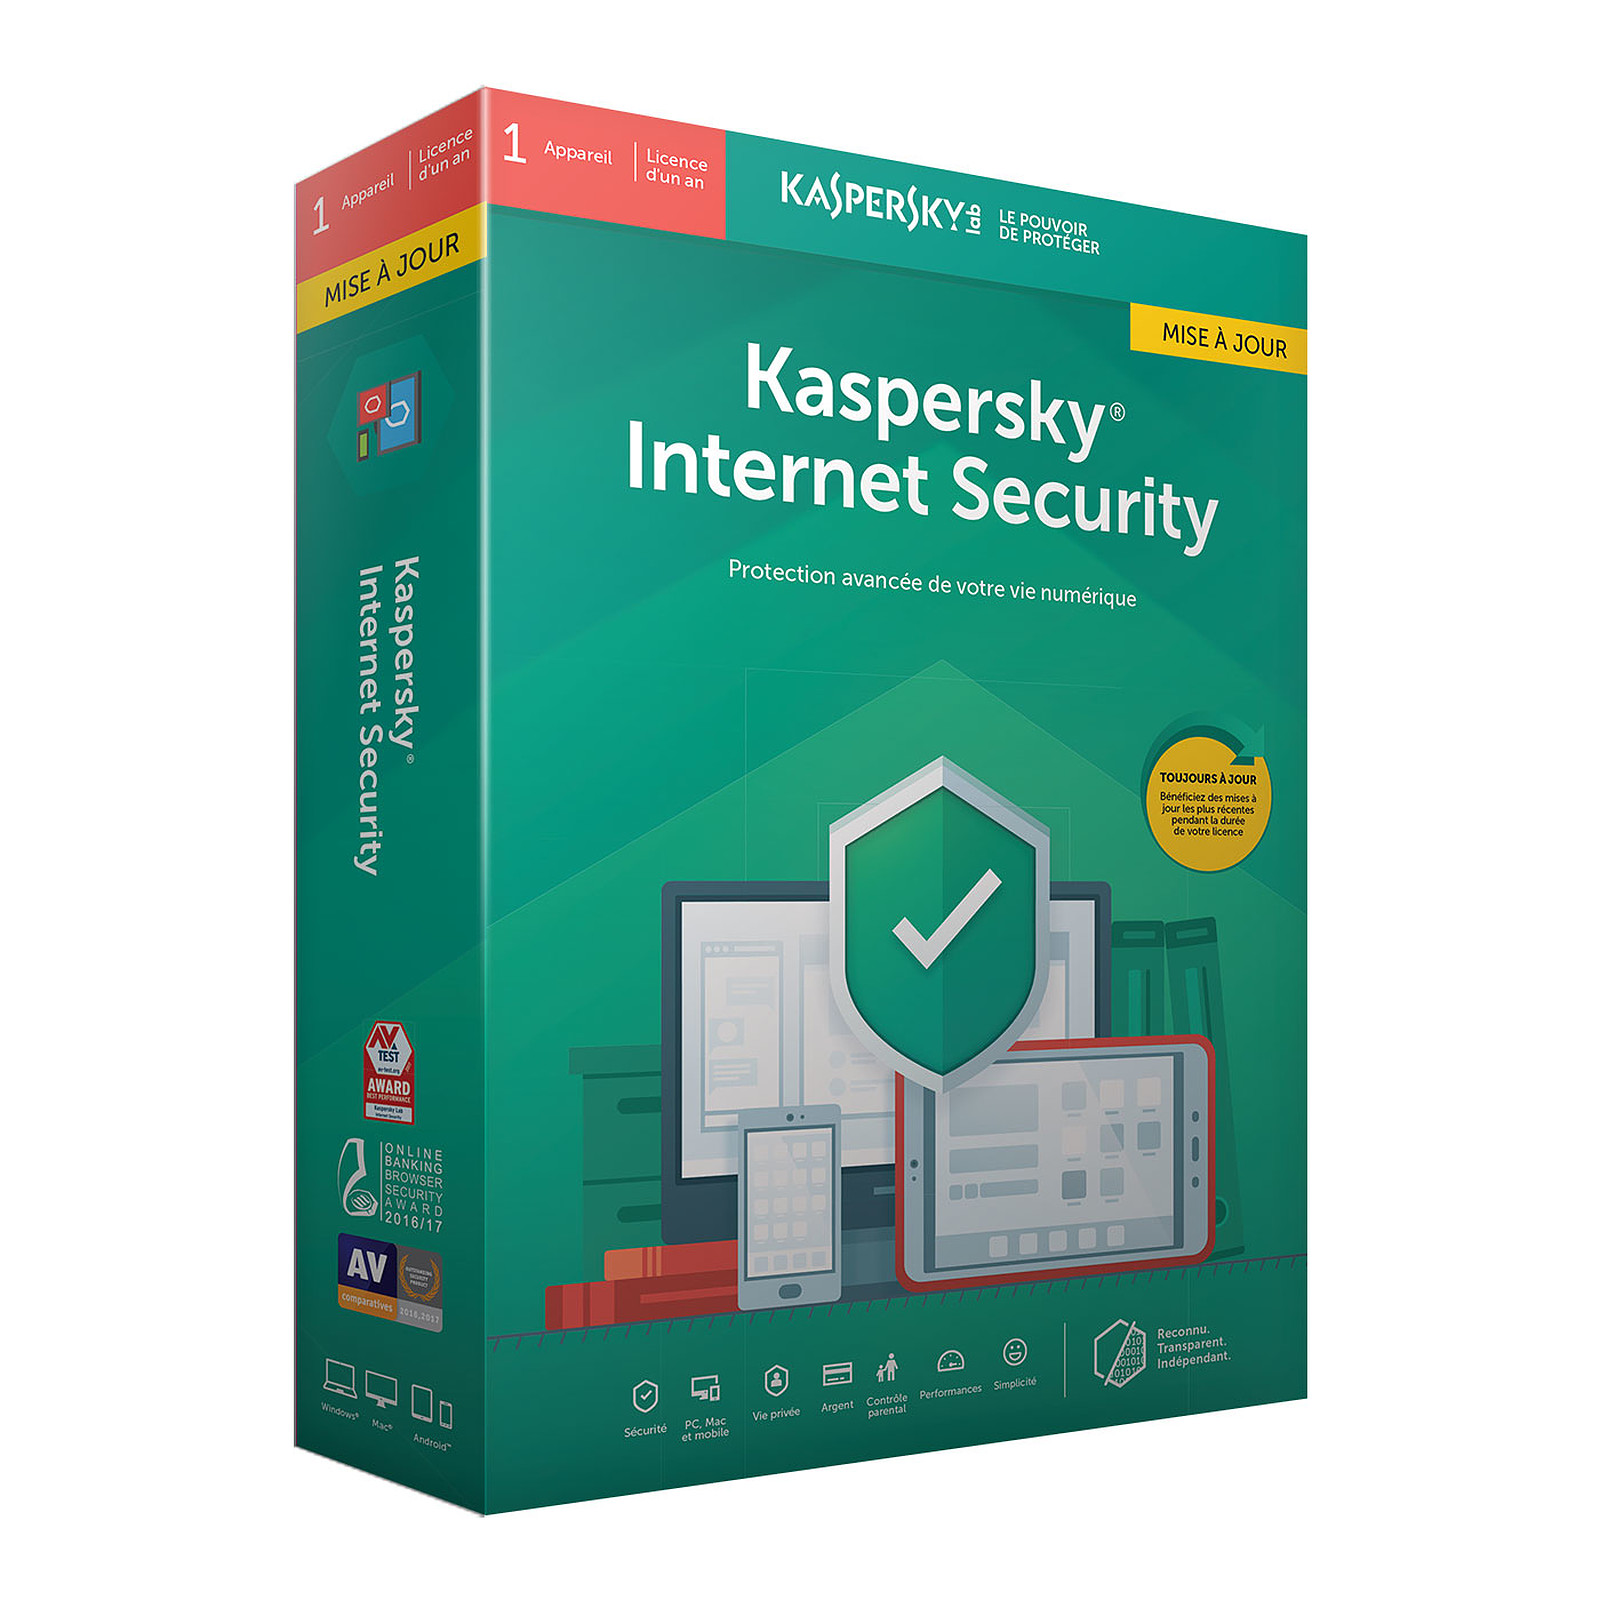 download kaspersky internet security for windows 7